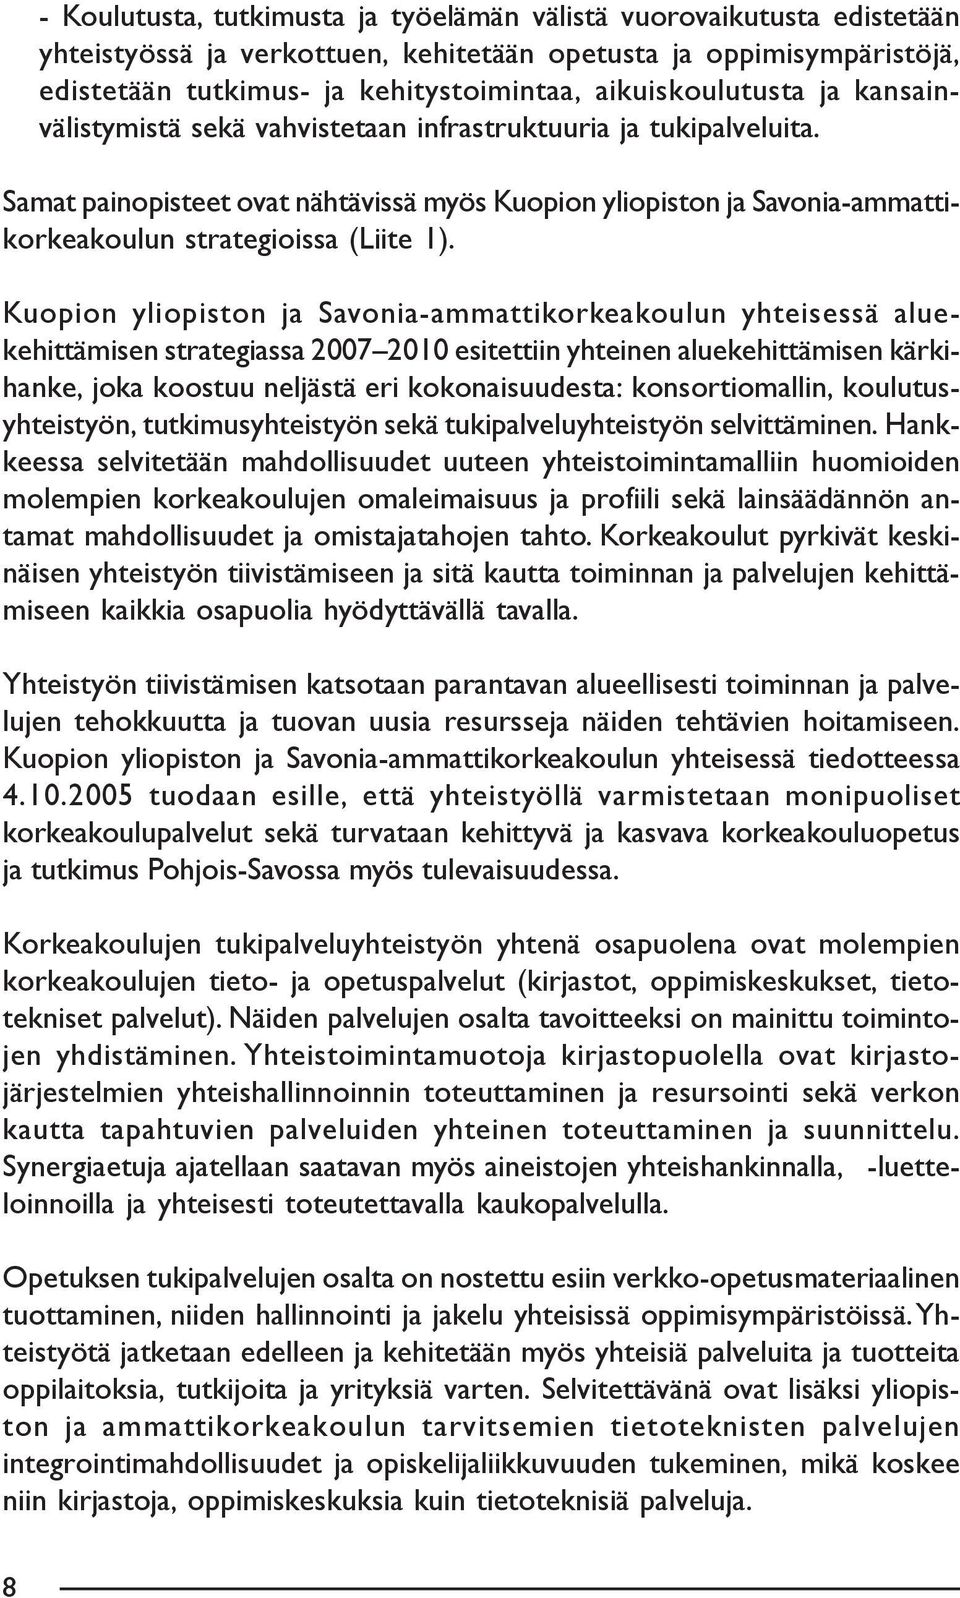 Samat painopisteet ovat nähtävissä myös Kuopion yliopiston ja Savonia-ammattikorkeakoulun strategioissa (Liite 1).